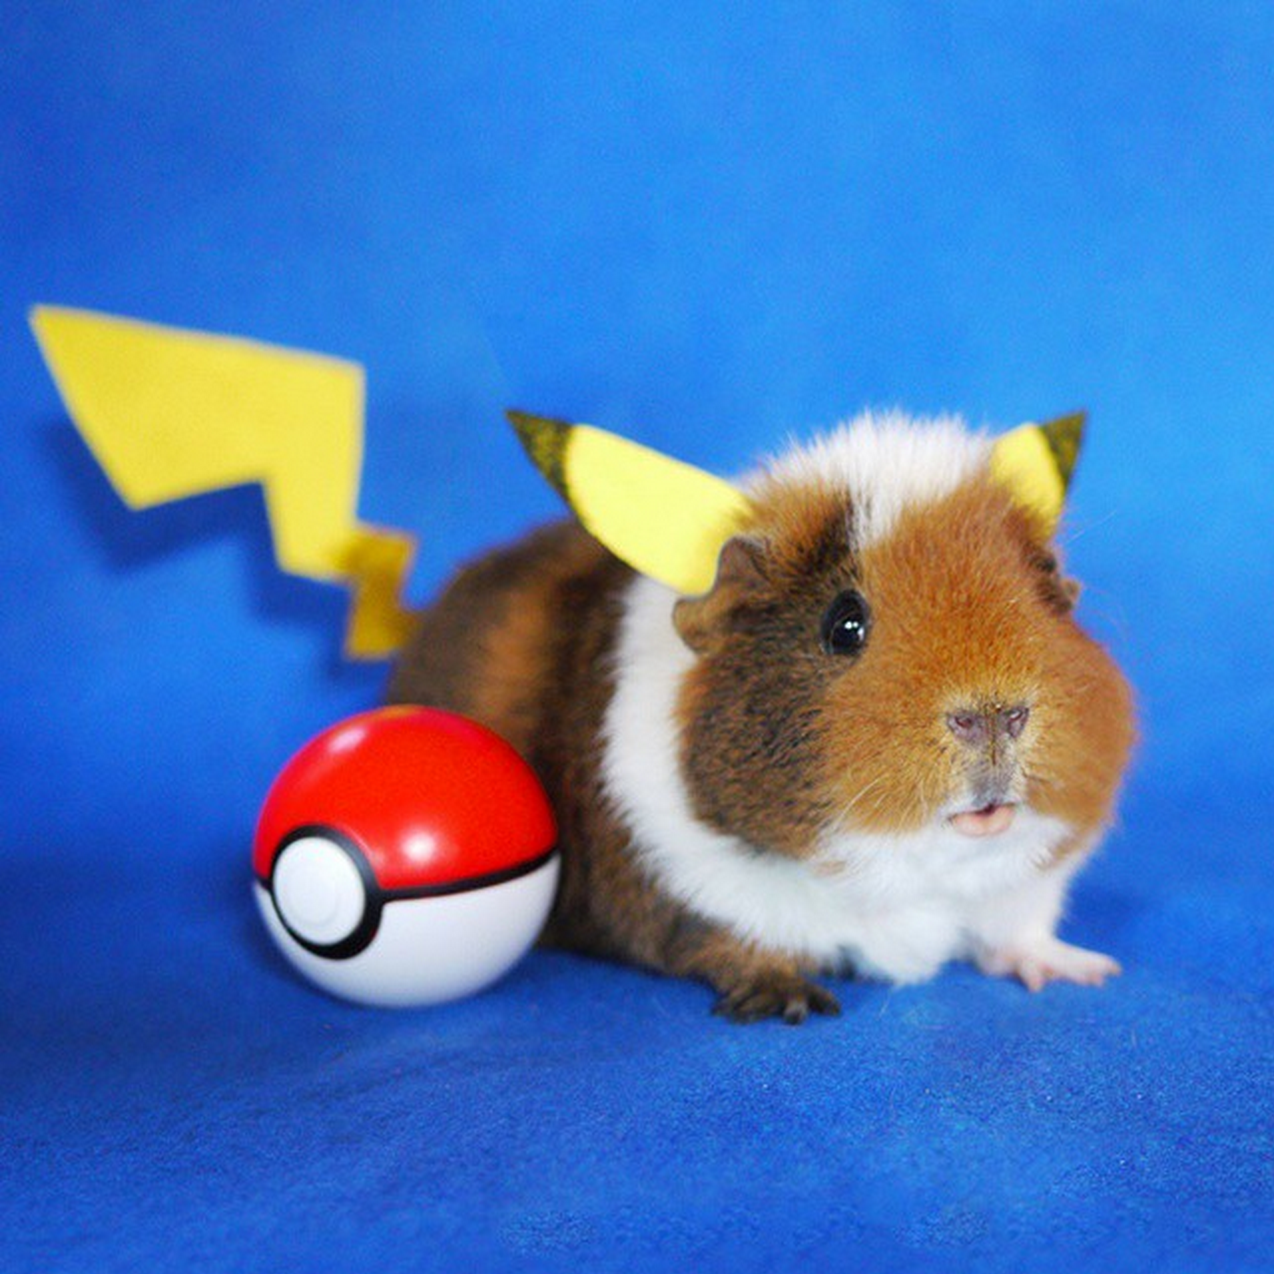 Fuzzberta utklädd till Pikachu ur Pokémon.